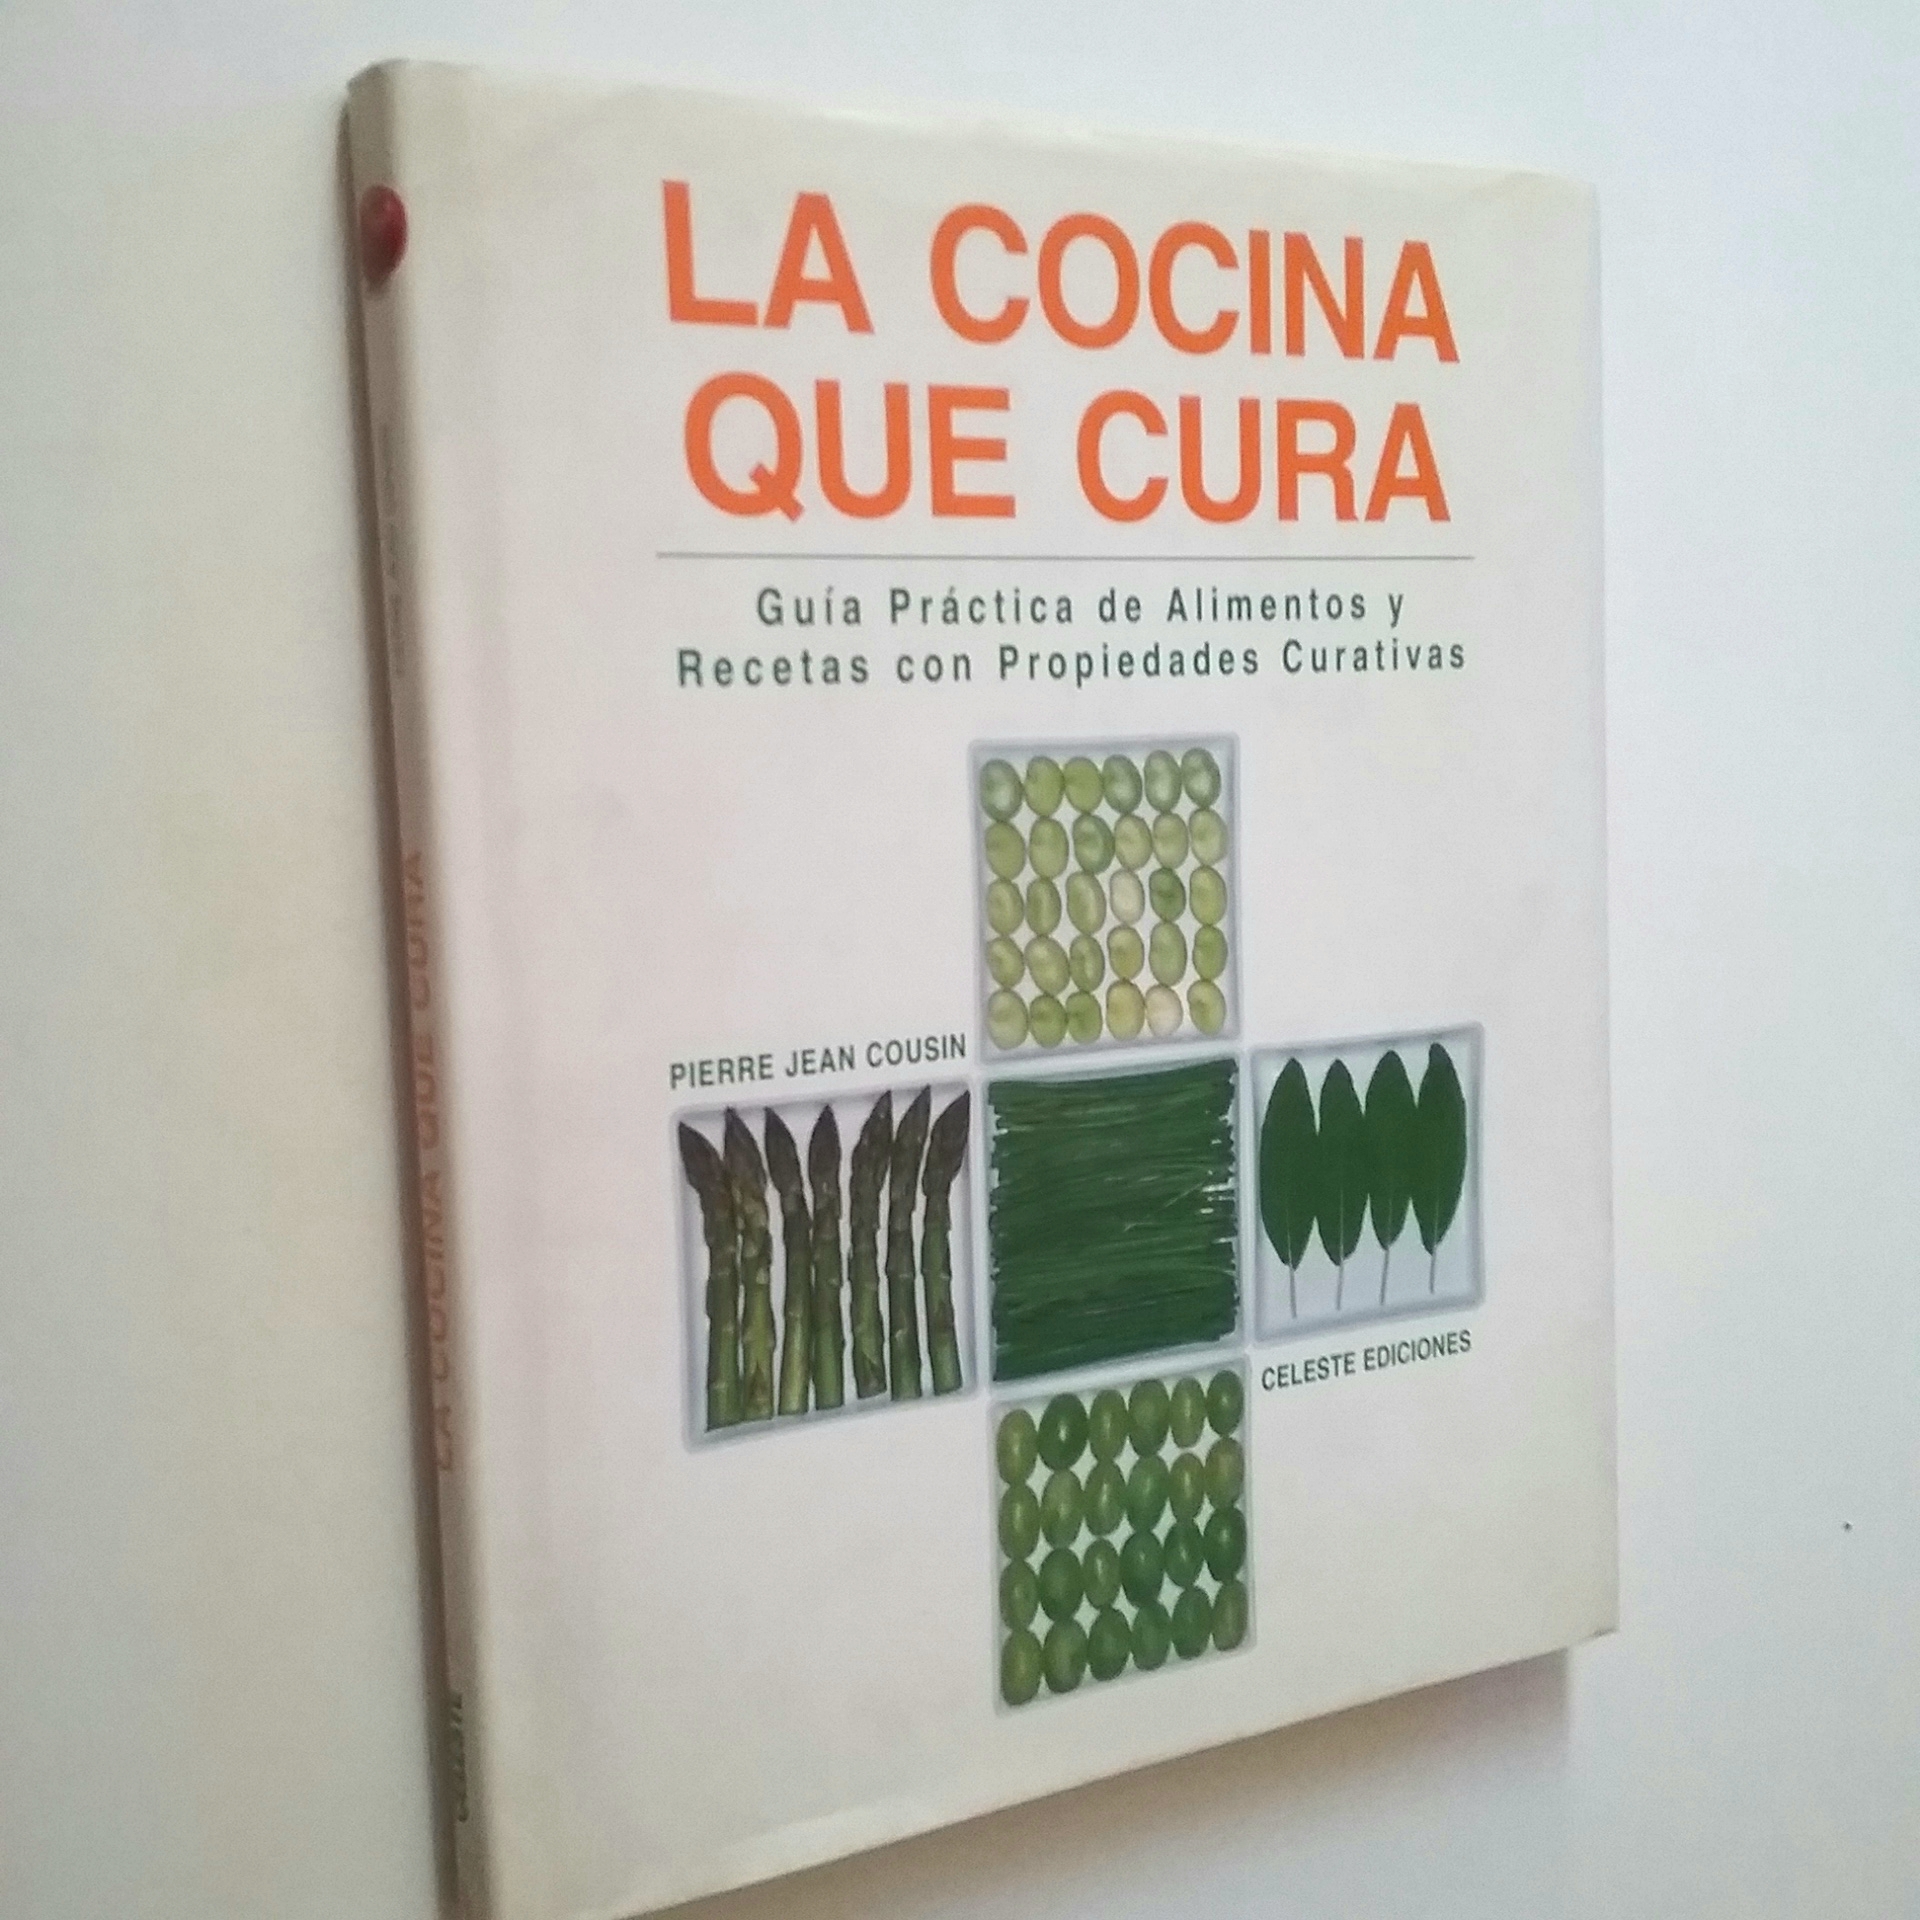 La cocina que cura. Guía práctica de alimentos y recetas con propiedades curativas - Pierre Jean Cousin